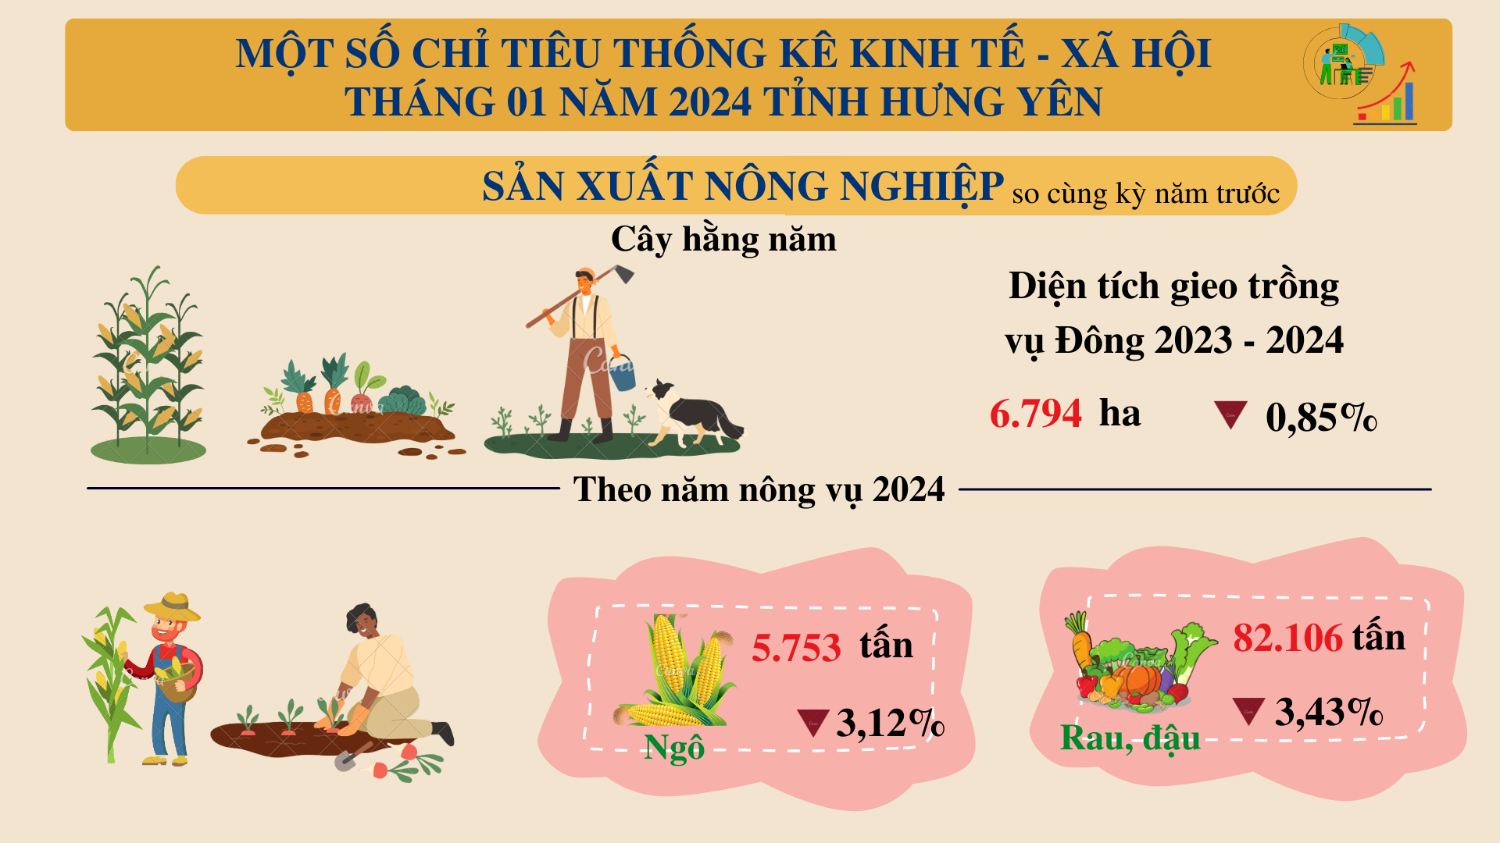 Tình hình kinh tế - xã hội tỉnh Hưng Yên tháng Một năm 2024